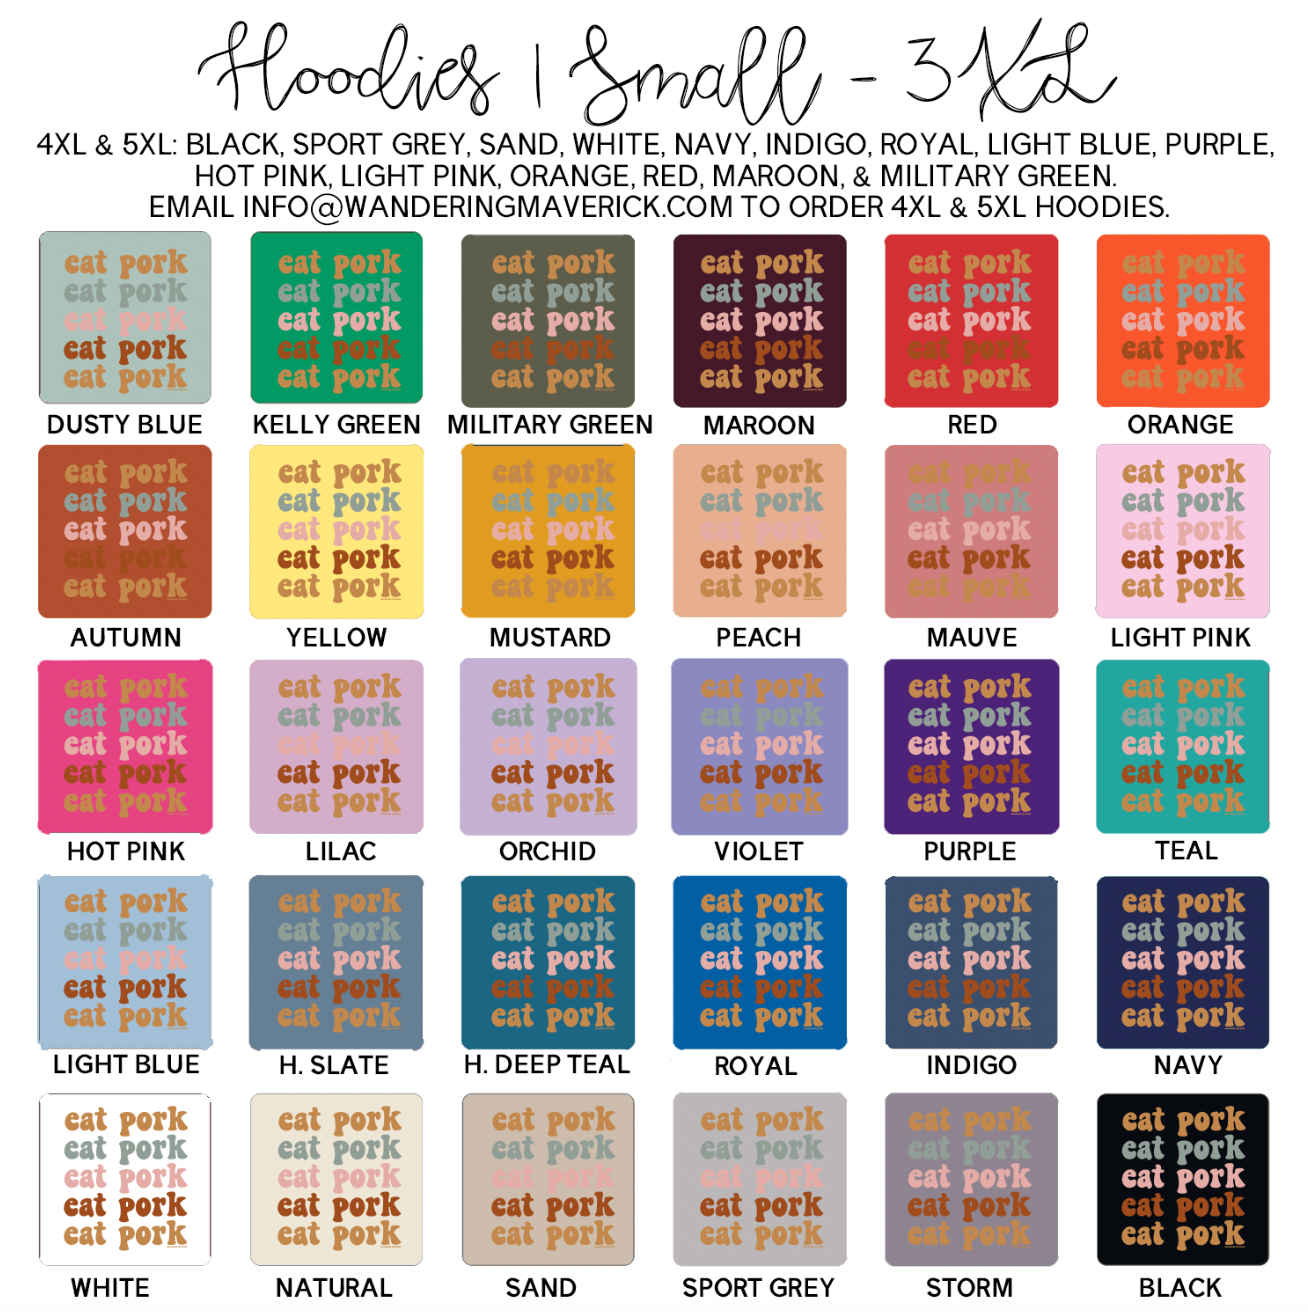 Groovy Eat Pork Hoodie (S-3XL) Unisex - Multiple Colors!